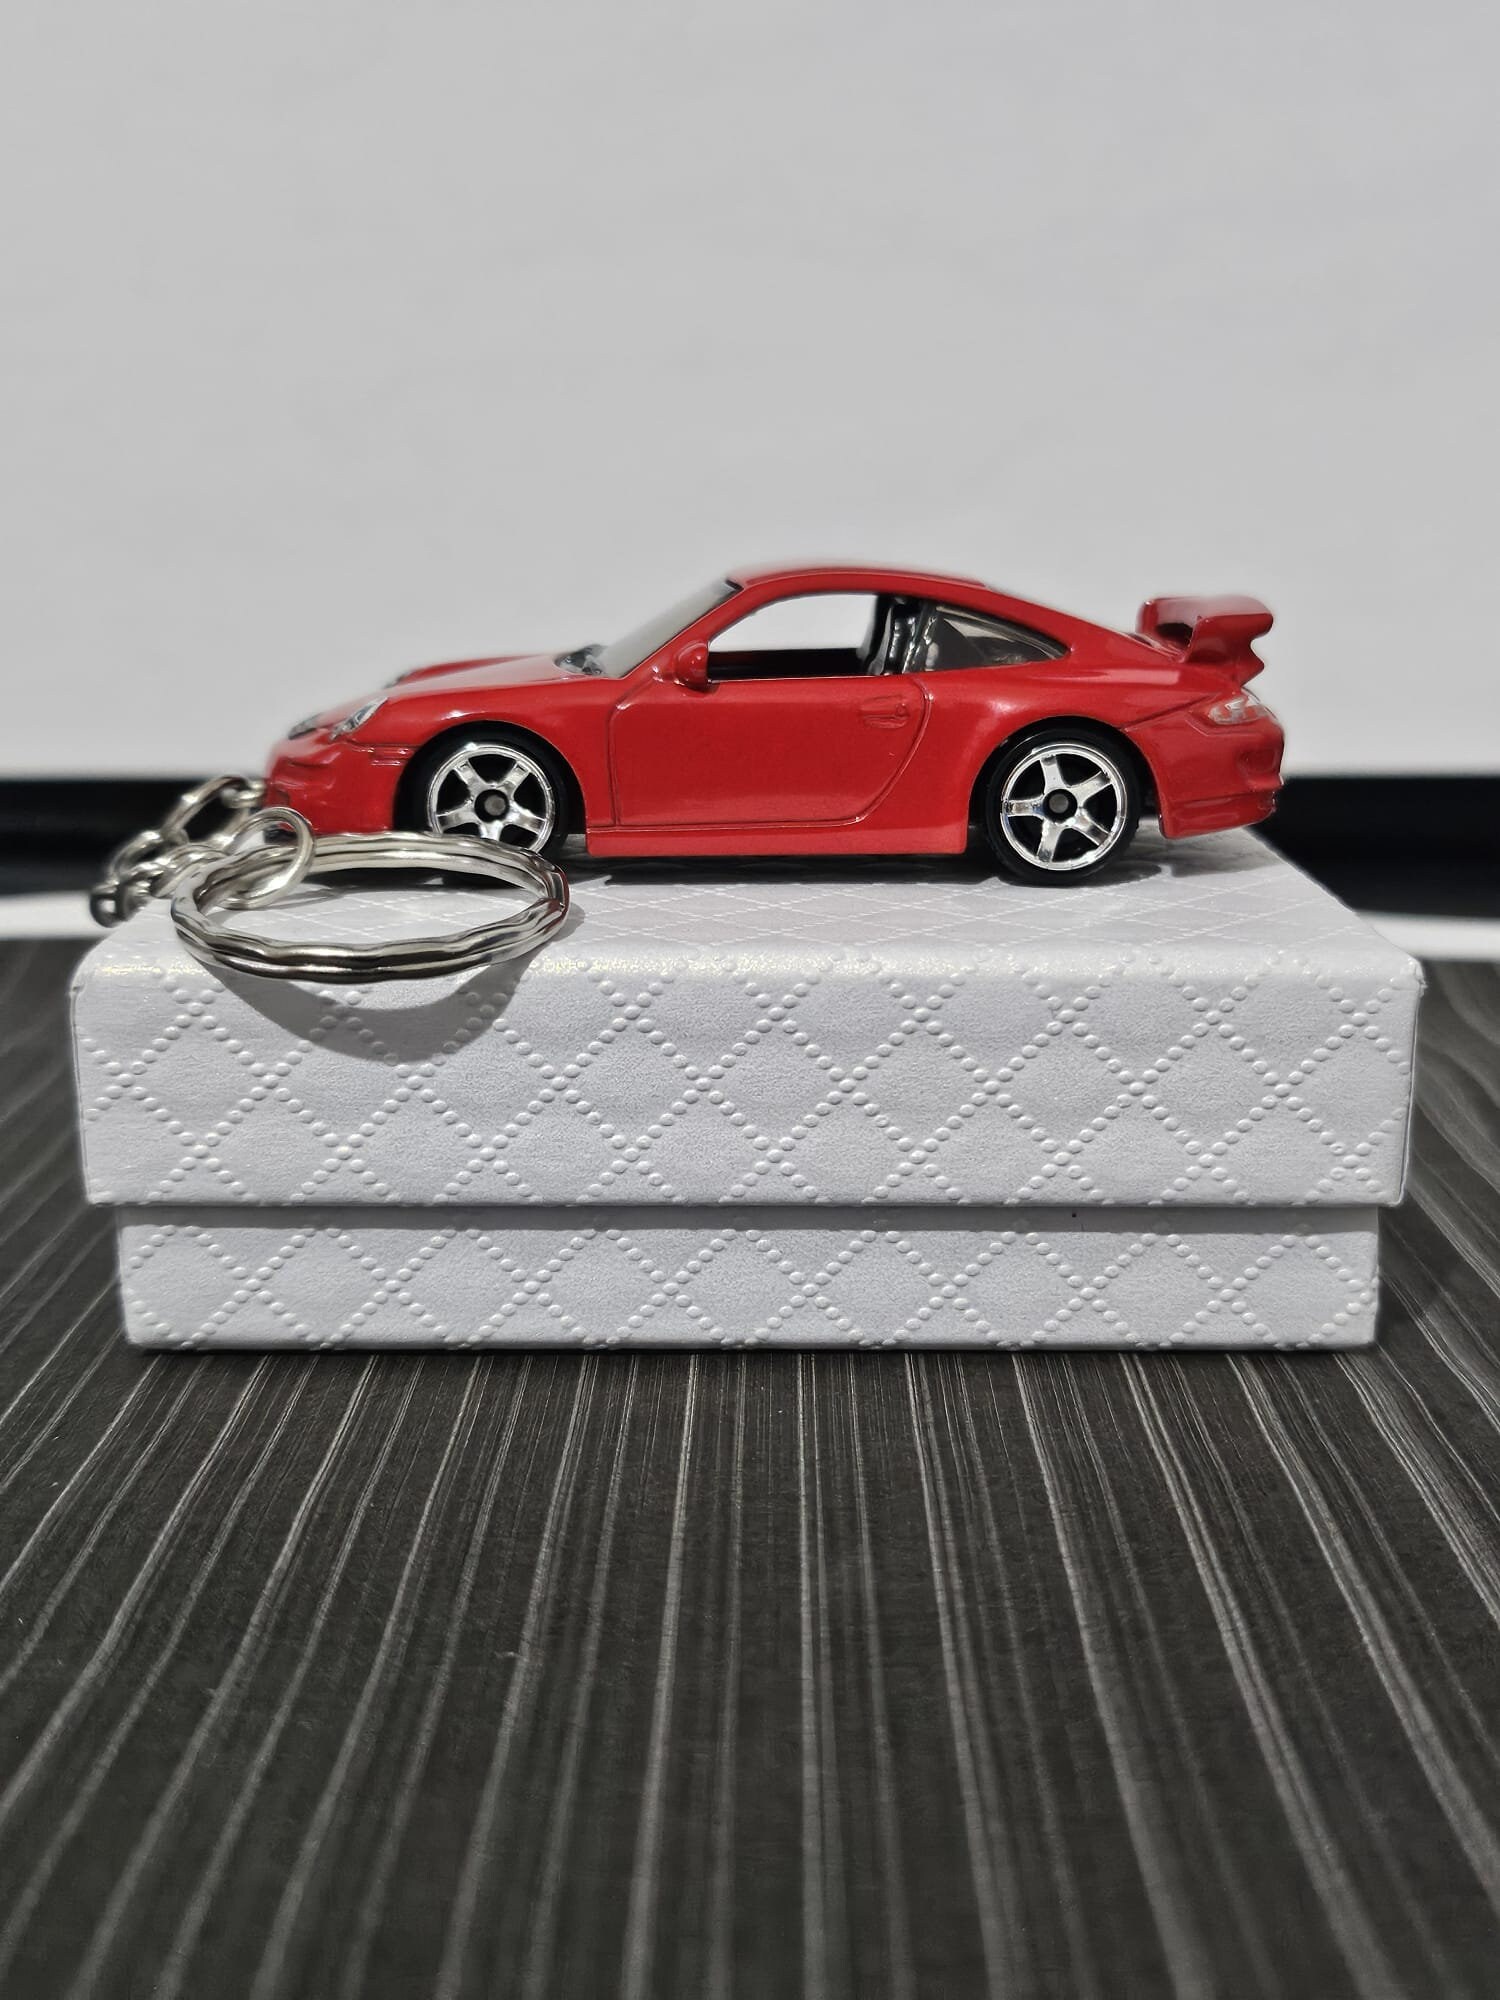 Porte-cles Porsche 911 - francis miniatures